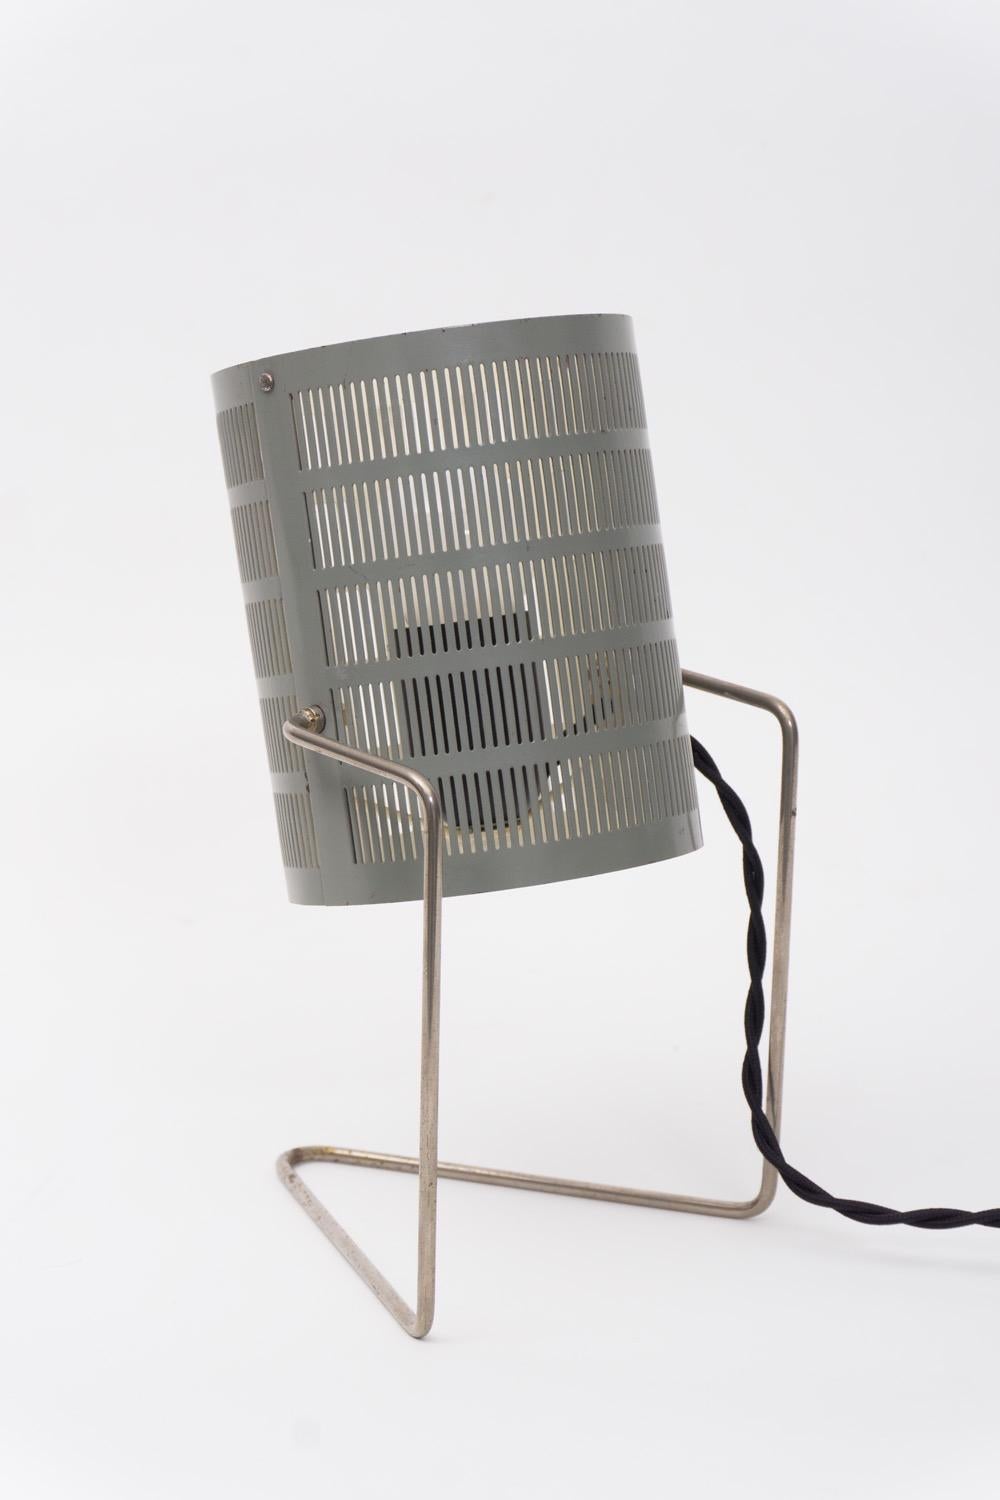 Italian Table Lamp, Aluminum, by Giardi e Barzaghi, 1955-57 For Sale